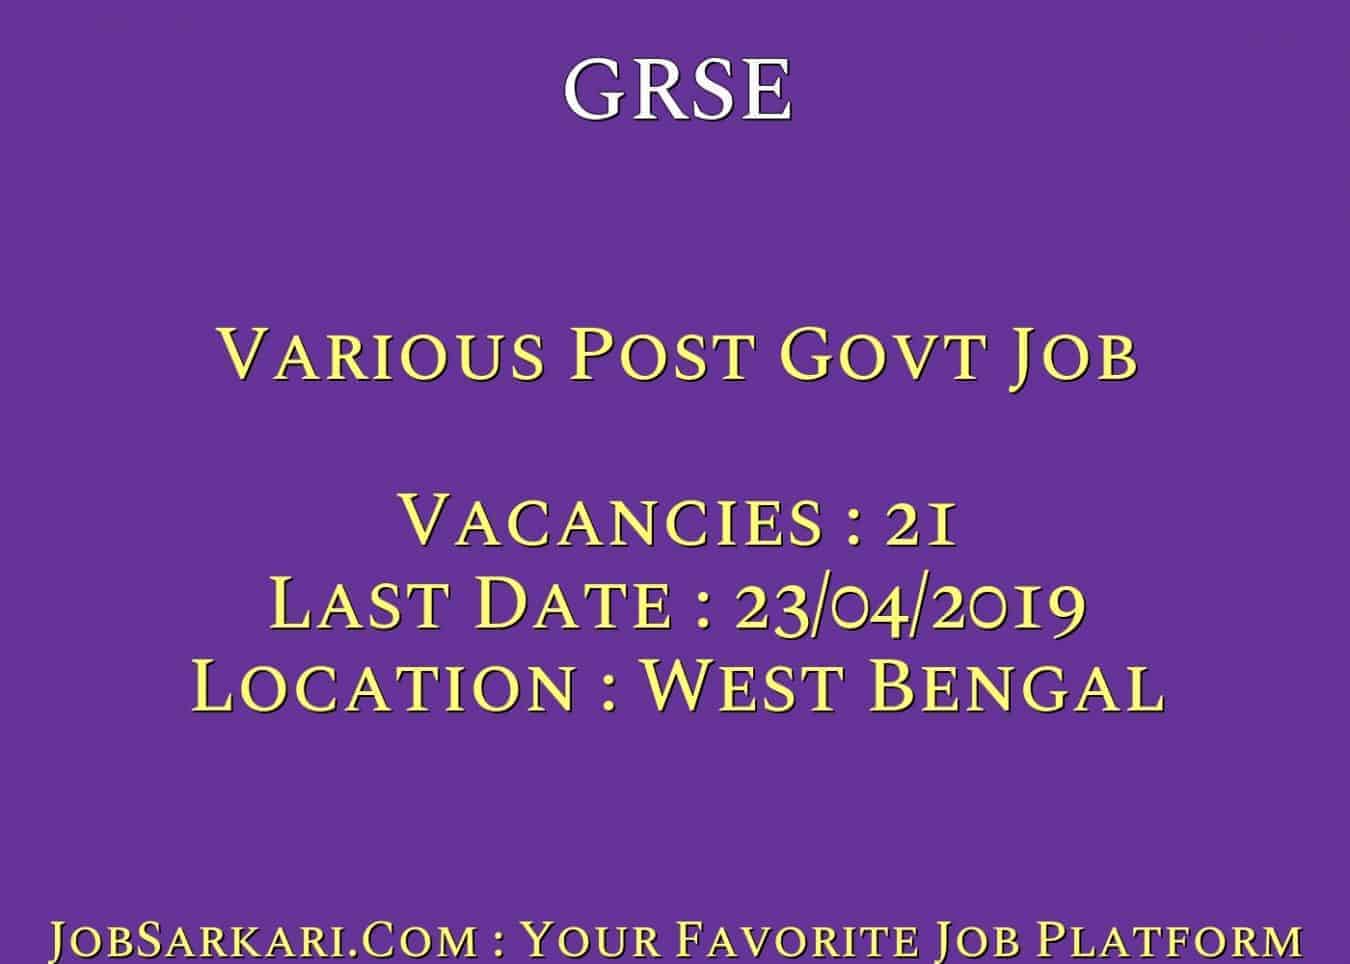 GRSE Recruitment 2019 For Various Post Govt Job